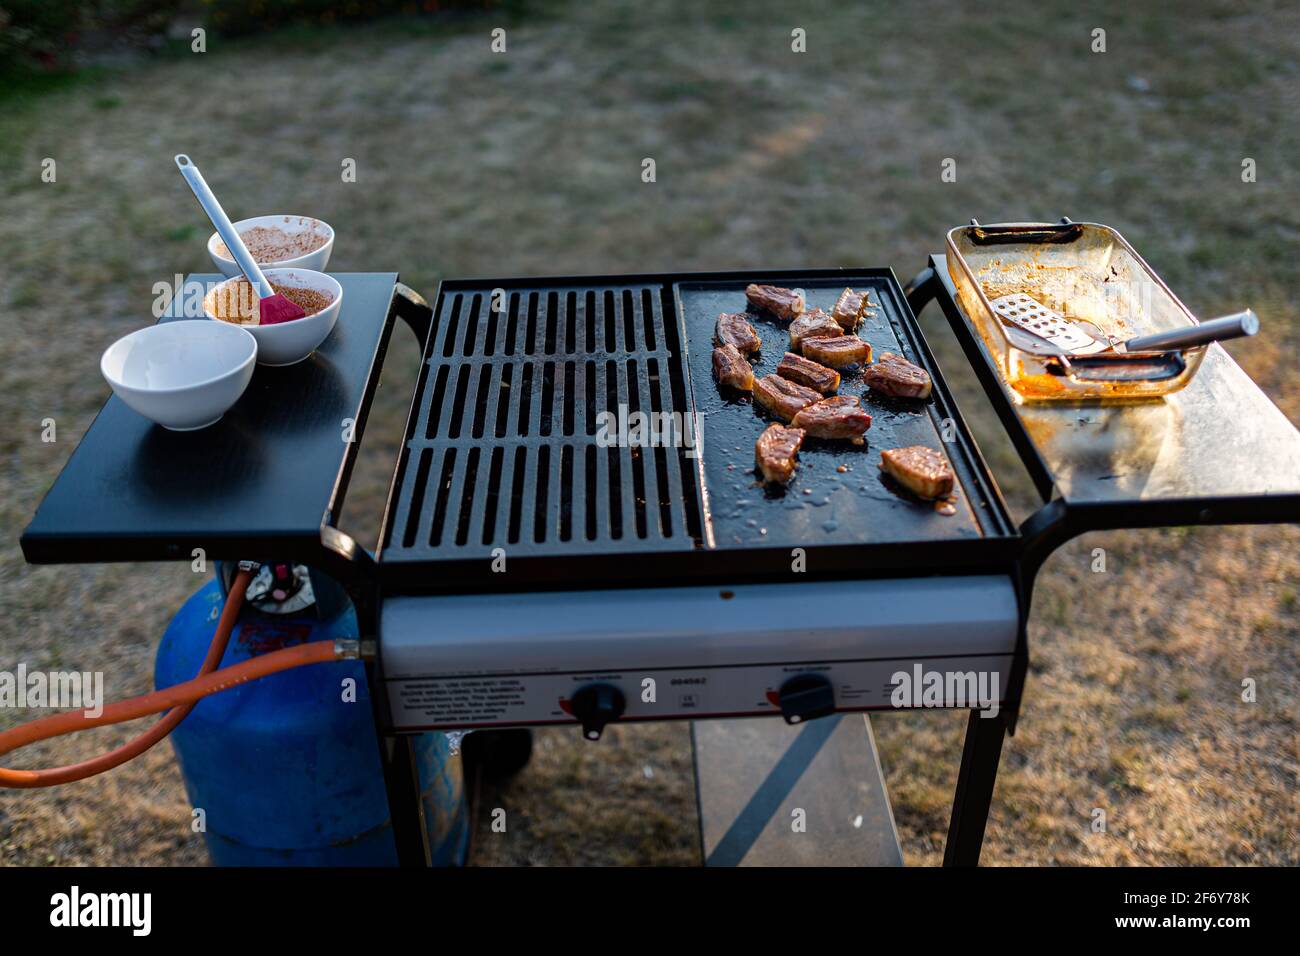 una barbacoa de gas tradicional con una selección de carnes cocinadas en el sol de verano Foto de stock